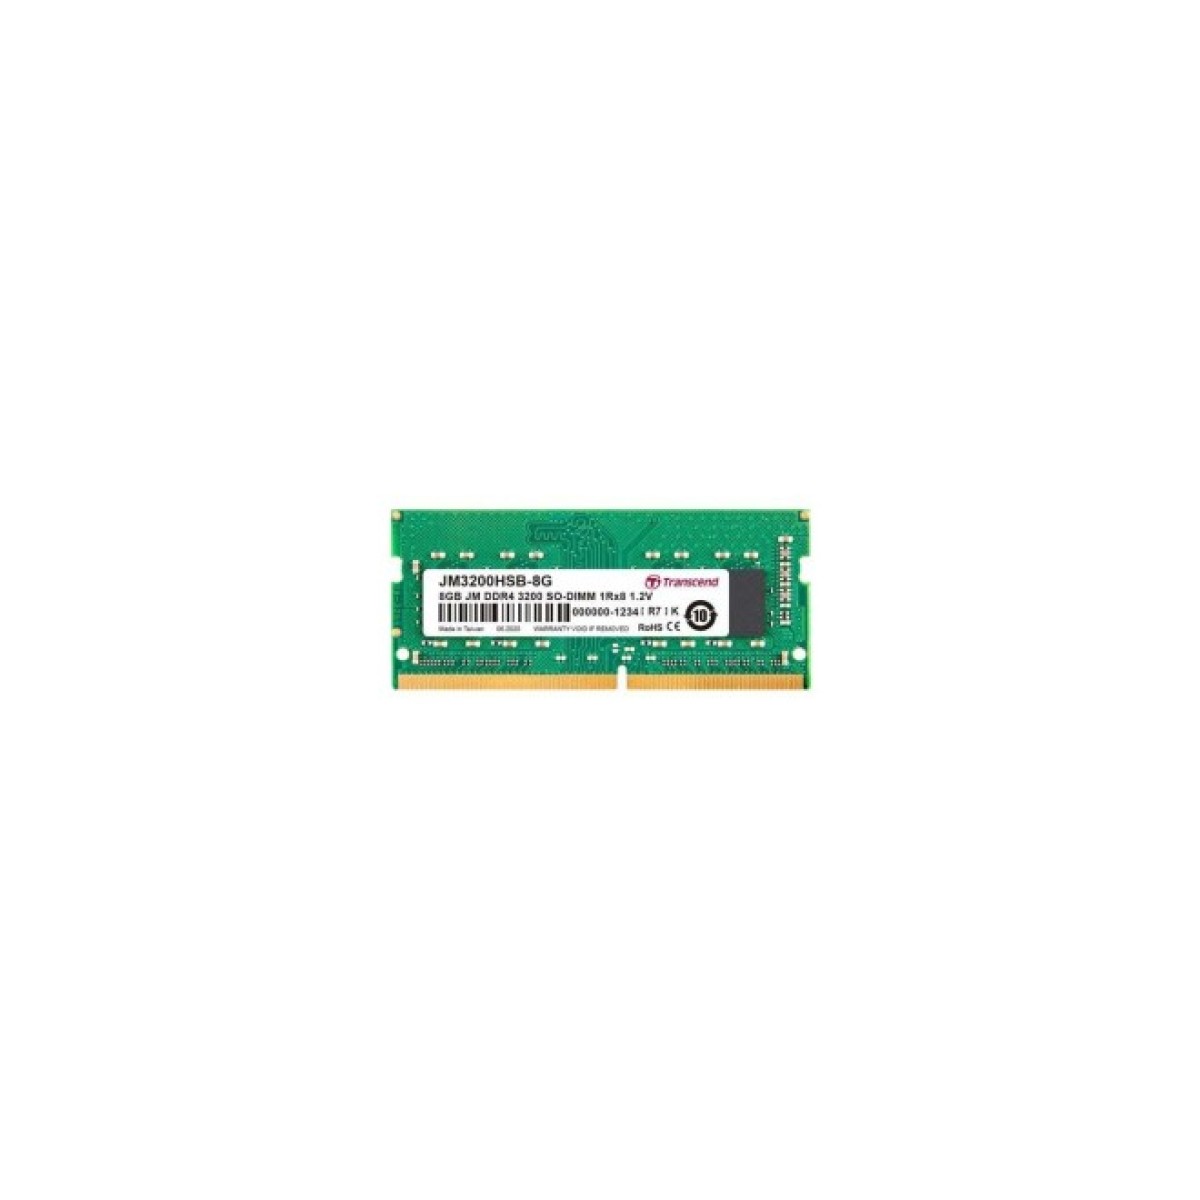 Модуль памяти для ноутбука SoDIMM DDR4 8GB 3200 MHz Transcend (JM3200HSB-8G) 98_98.jpg